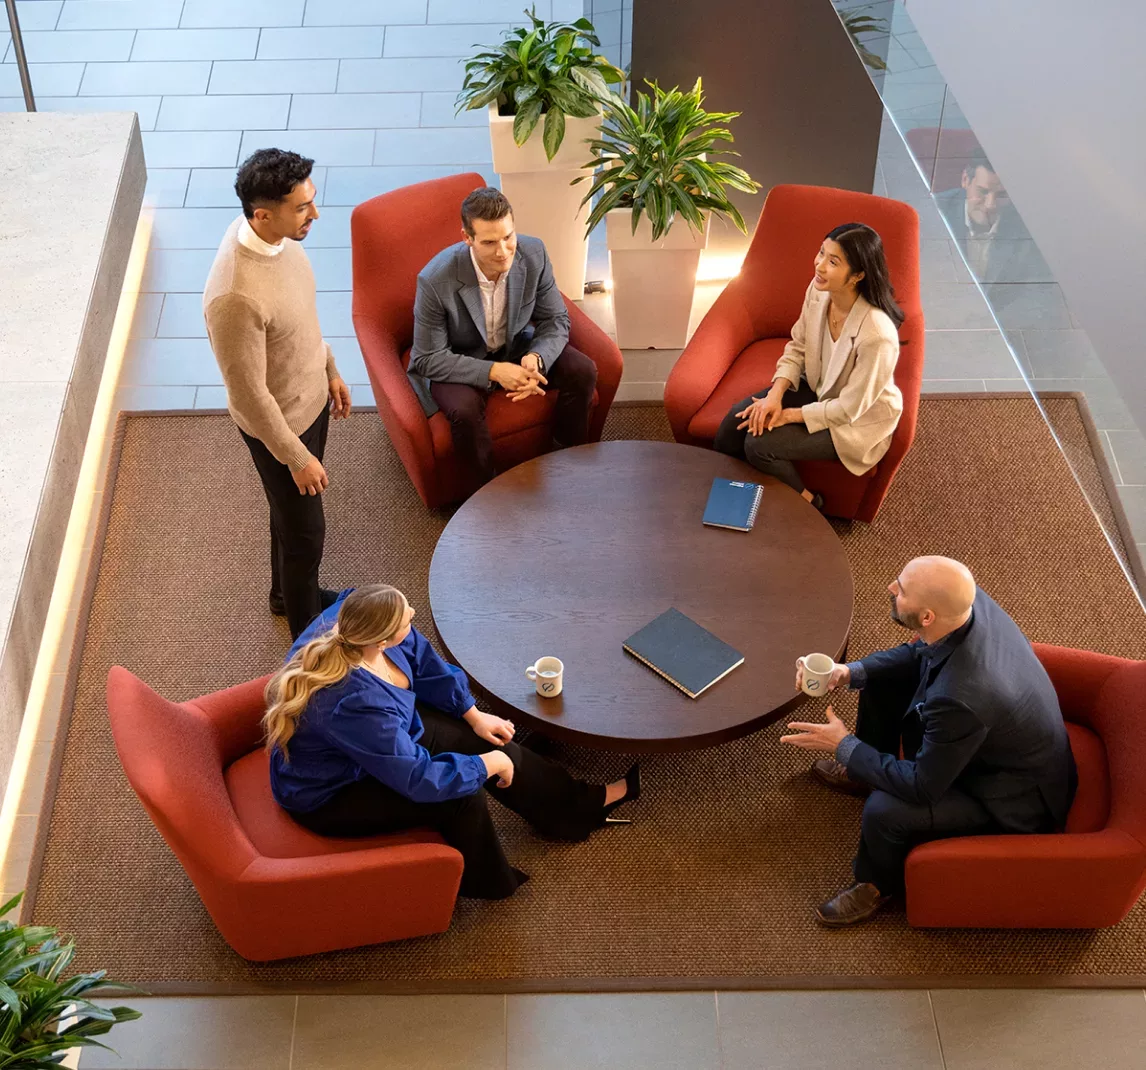 Cinq adultes dans un bureau. Ils sont réunis autour d’une petite table ronde avec des tasses à café. Quatre personnes sont assises autour de la table, et une personne est debout.